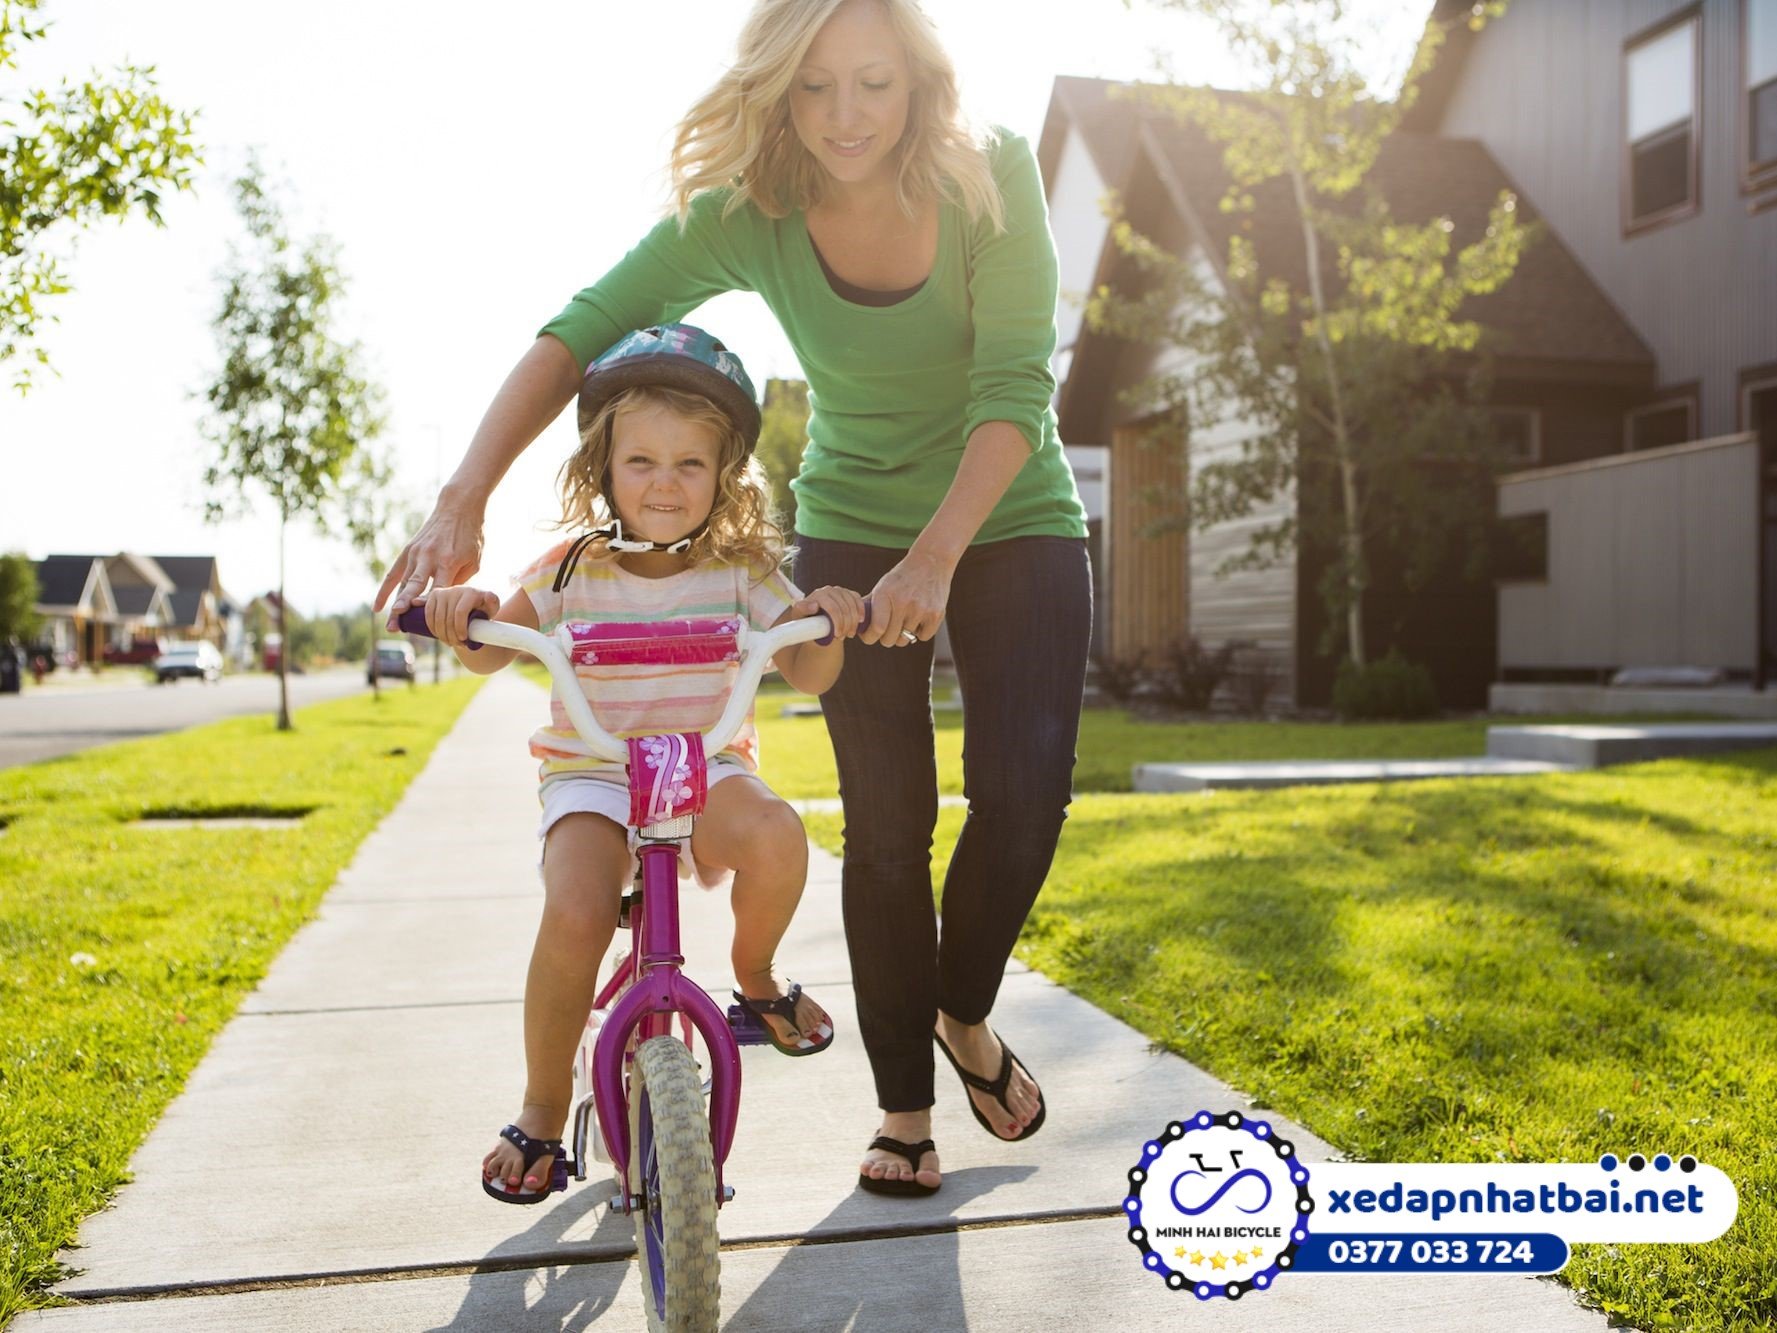 Để giúp bé có hứng thú đạp xe tốt hơn thì bạn nên mua một chiếc xe đạp cho bé thích hợp với việc luyện tập